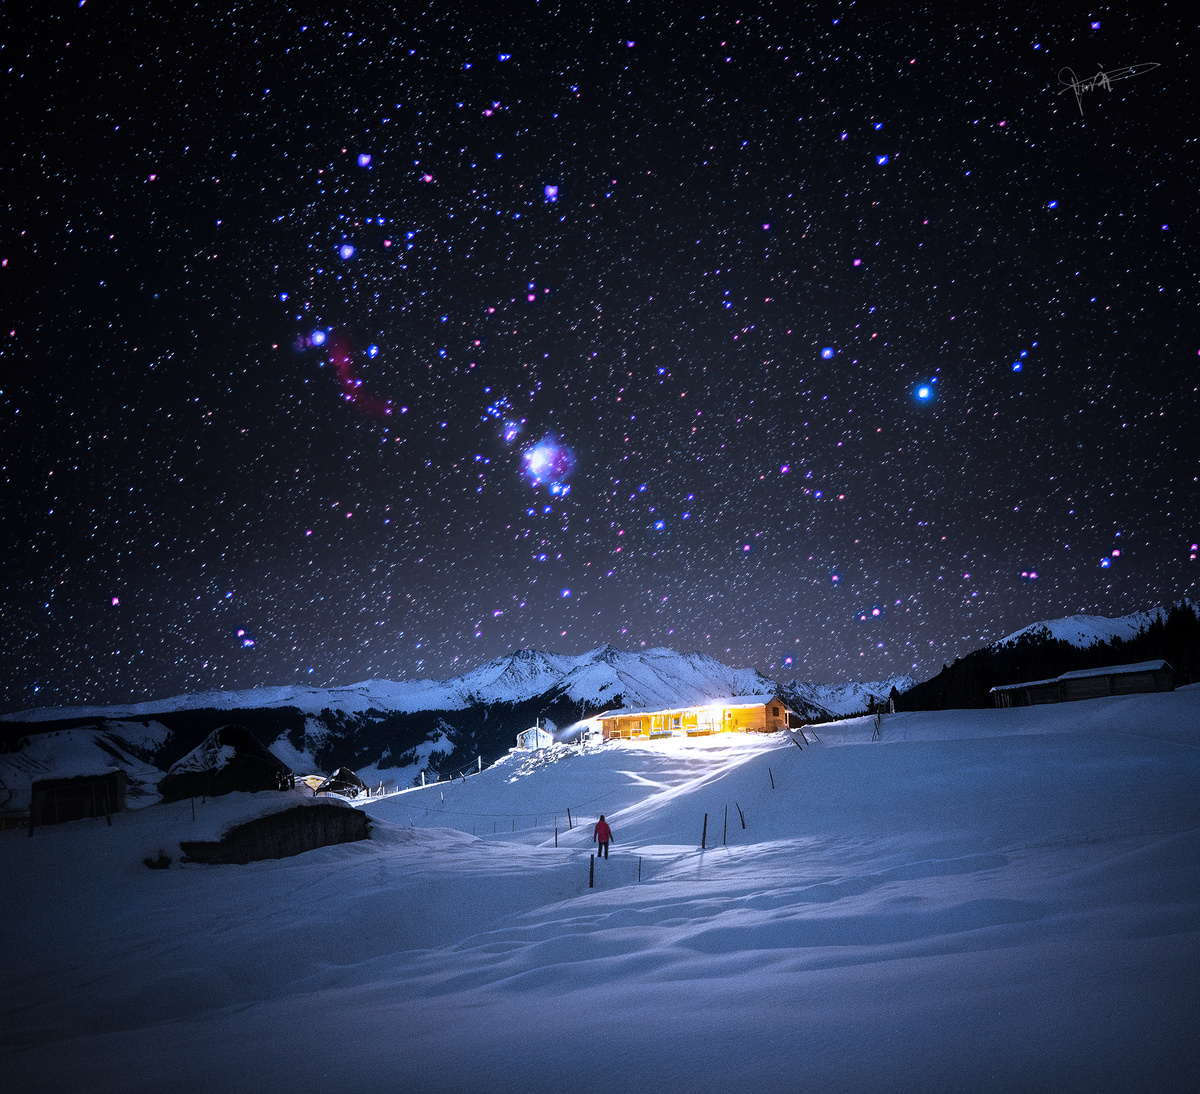 夜晚的雪山上有星星 房子被照亮了。